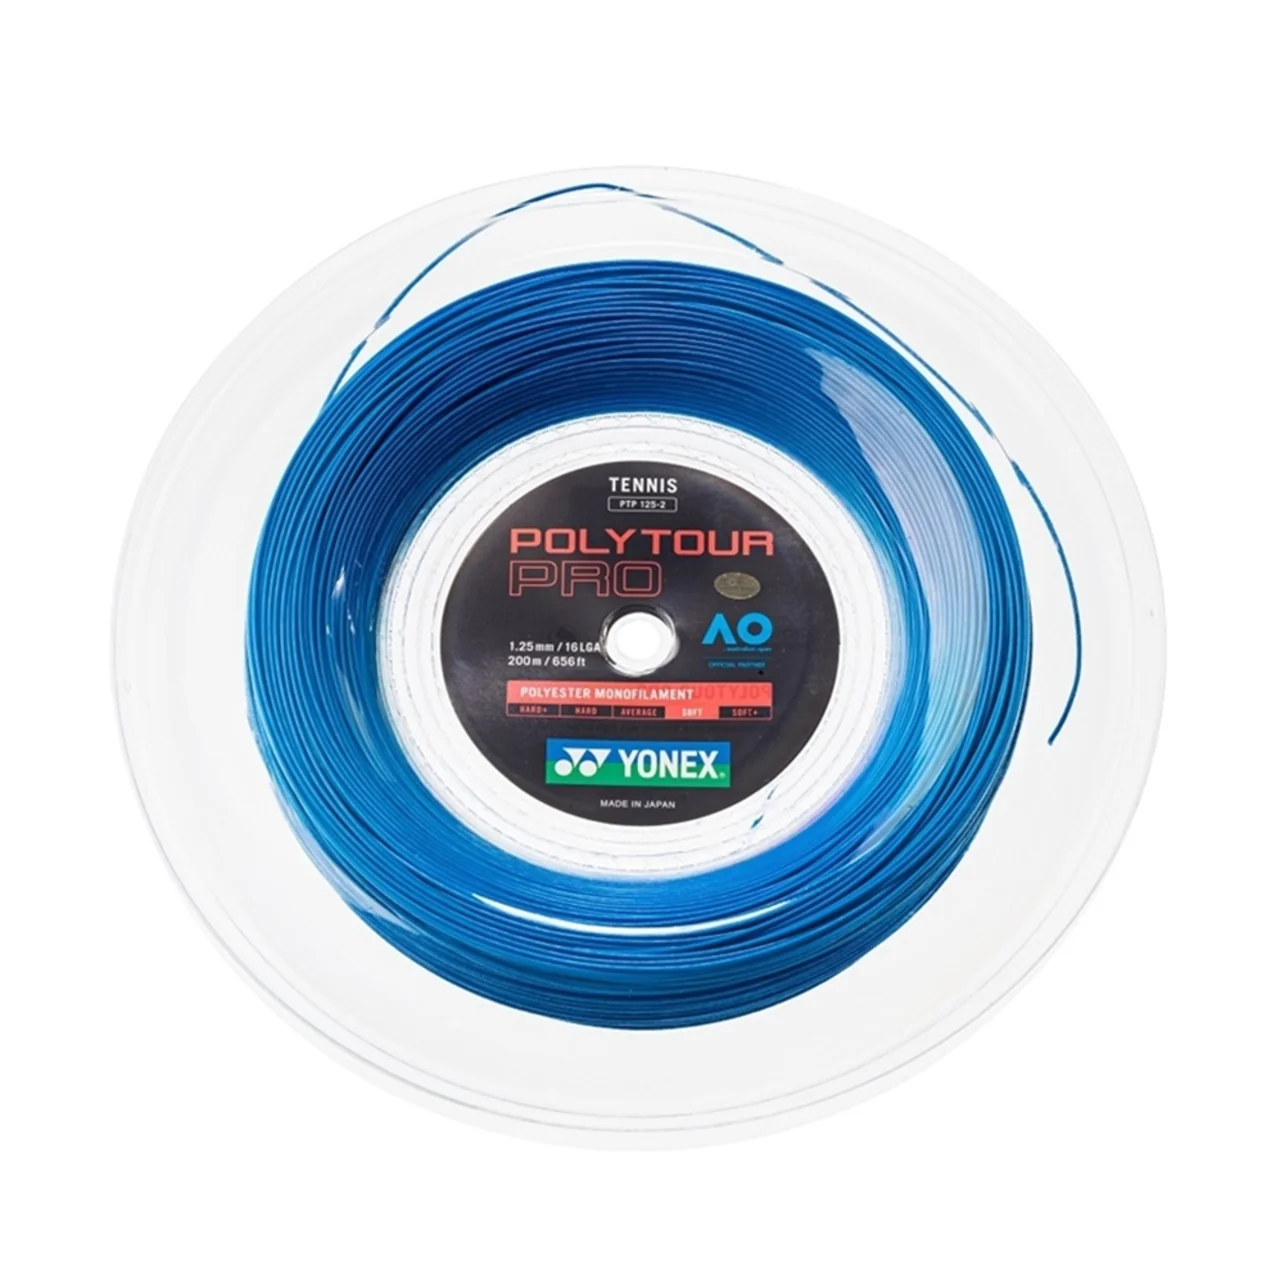 Yonex Poly Tour Pro Reel 200m Blue